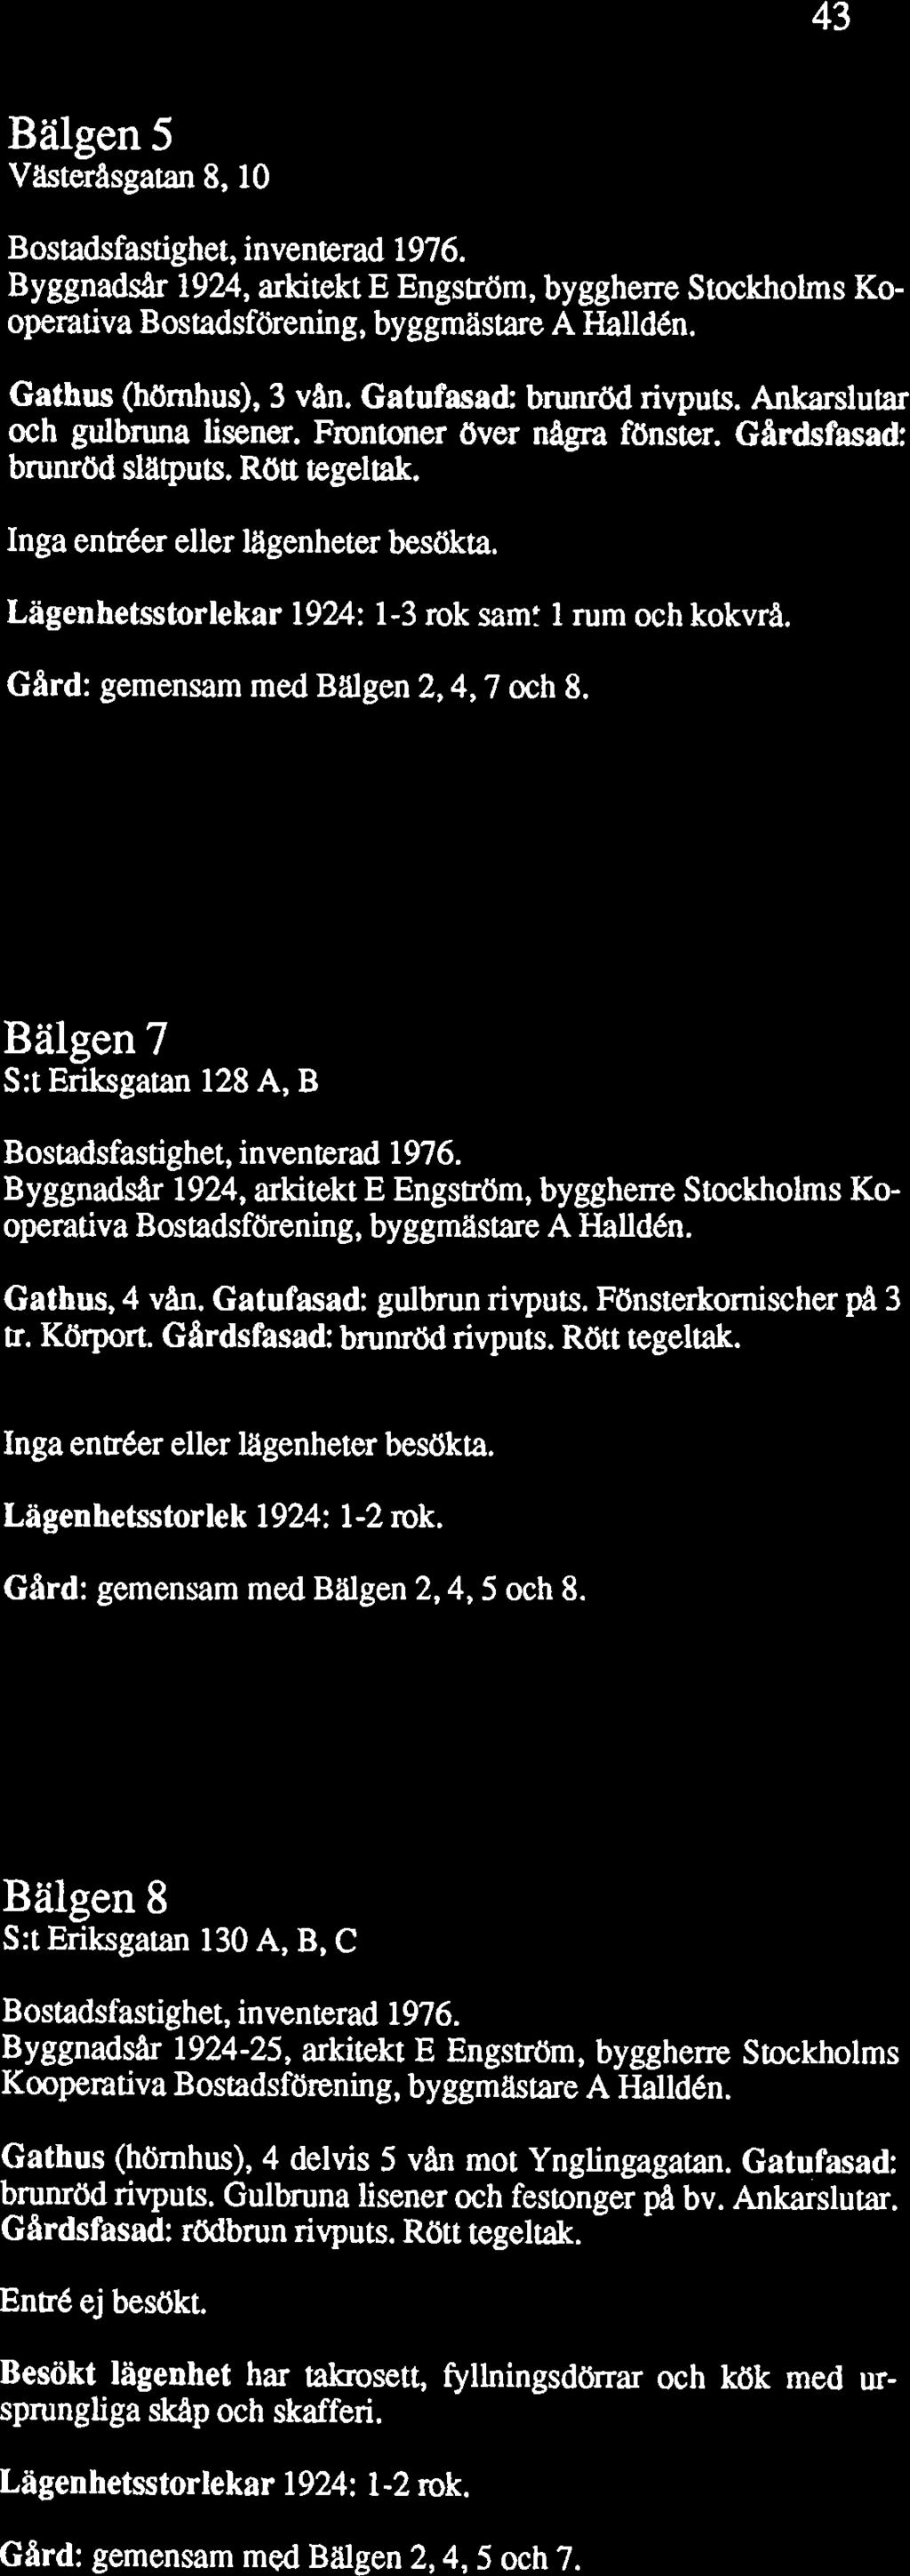 Bälgen 5 Vikterilsgatan 8,10 Bostadsfastighet, inventerad 1976. Byggnadsår 1924, arkitekt E Engström, byggherre Stockholms Kooperativa Bostadsförening, byggmastare A Halldén. Gathus (hörnhus), 3 van.